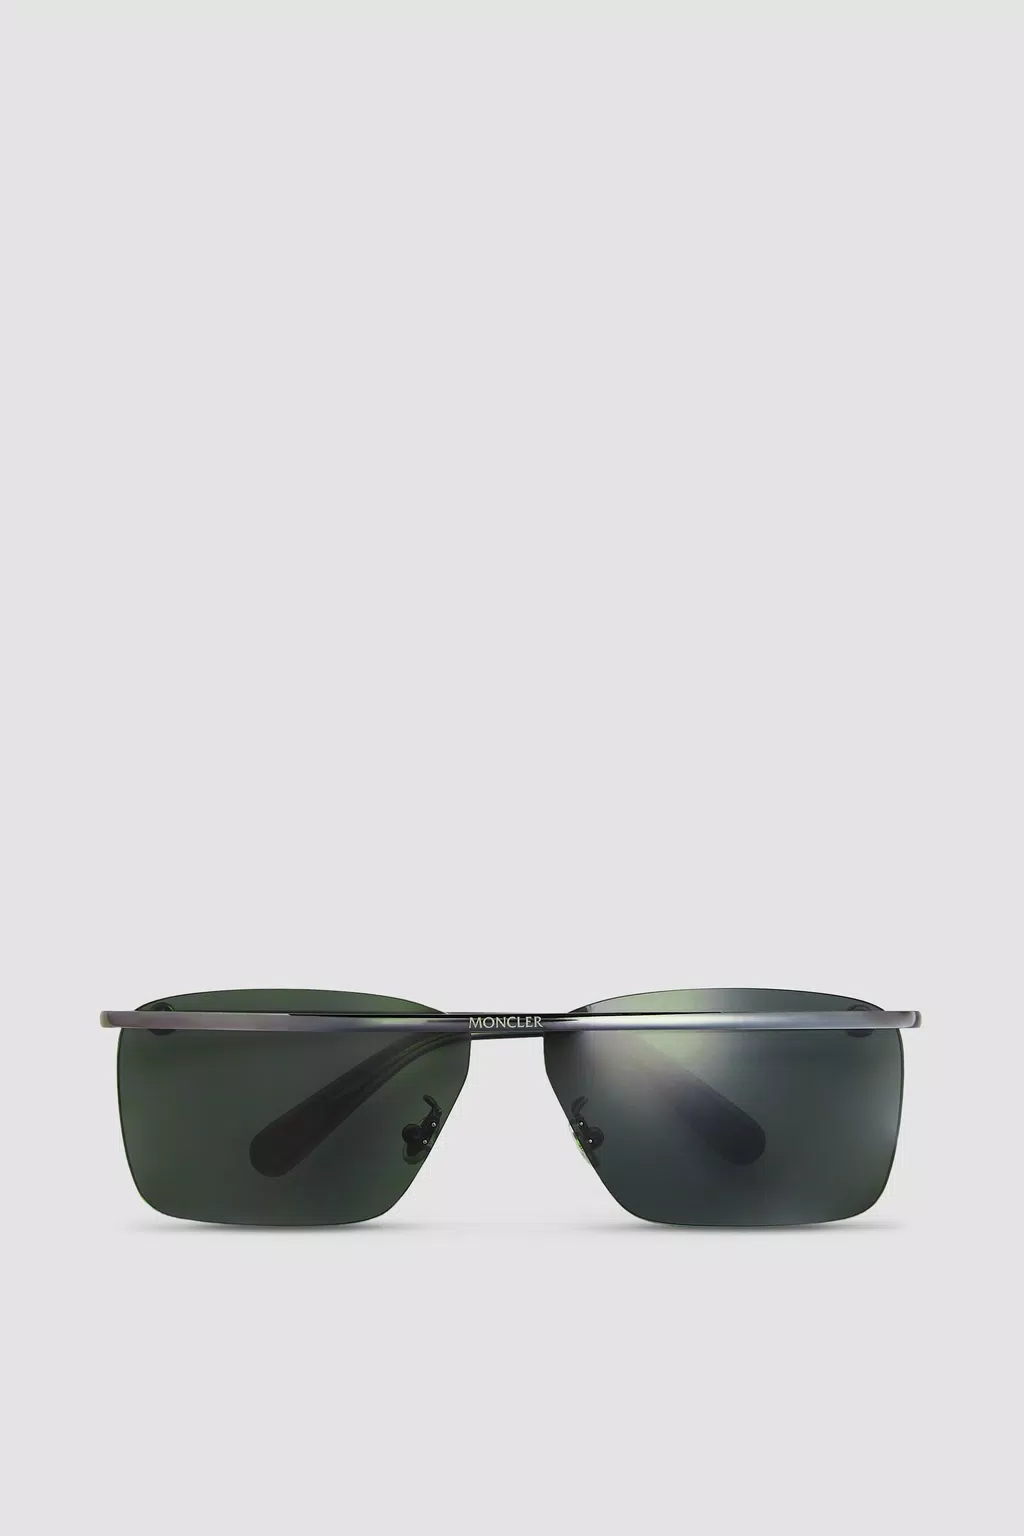 Niveler Rectangular Sunglasses Gender Neutral Shiny Black Moncler 1